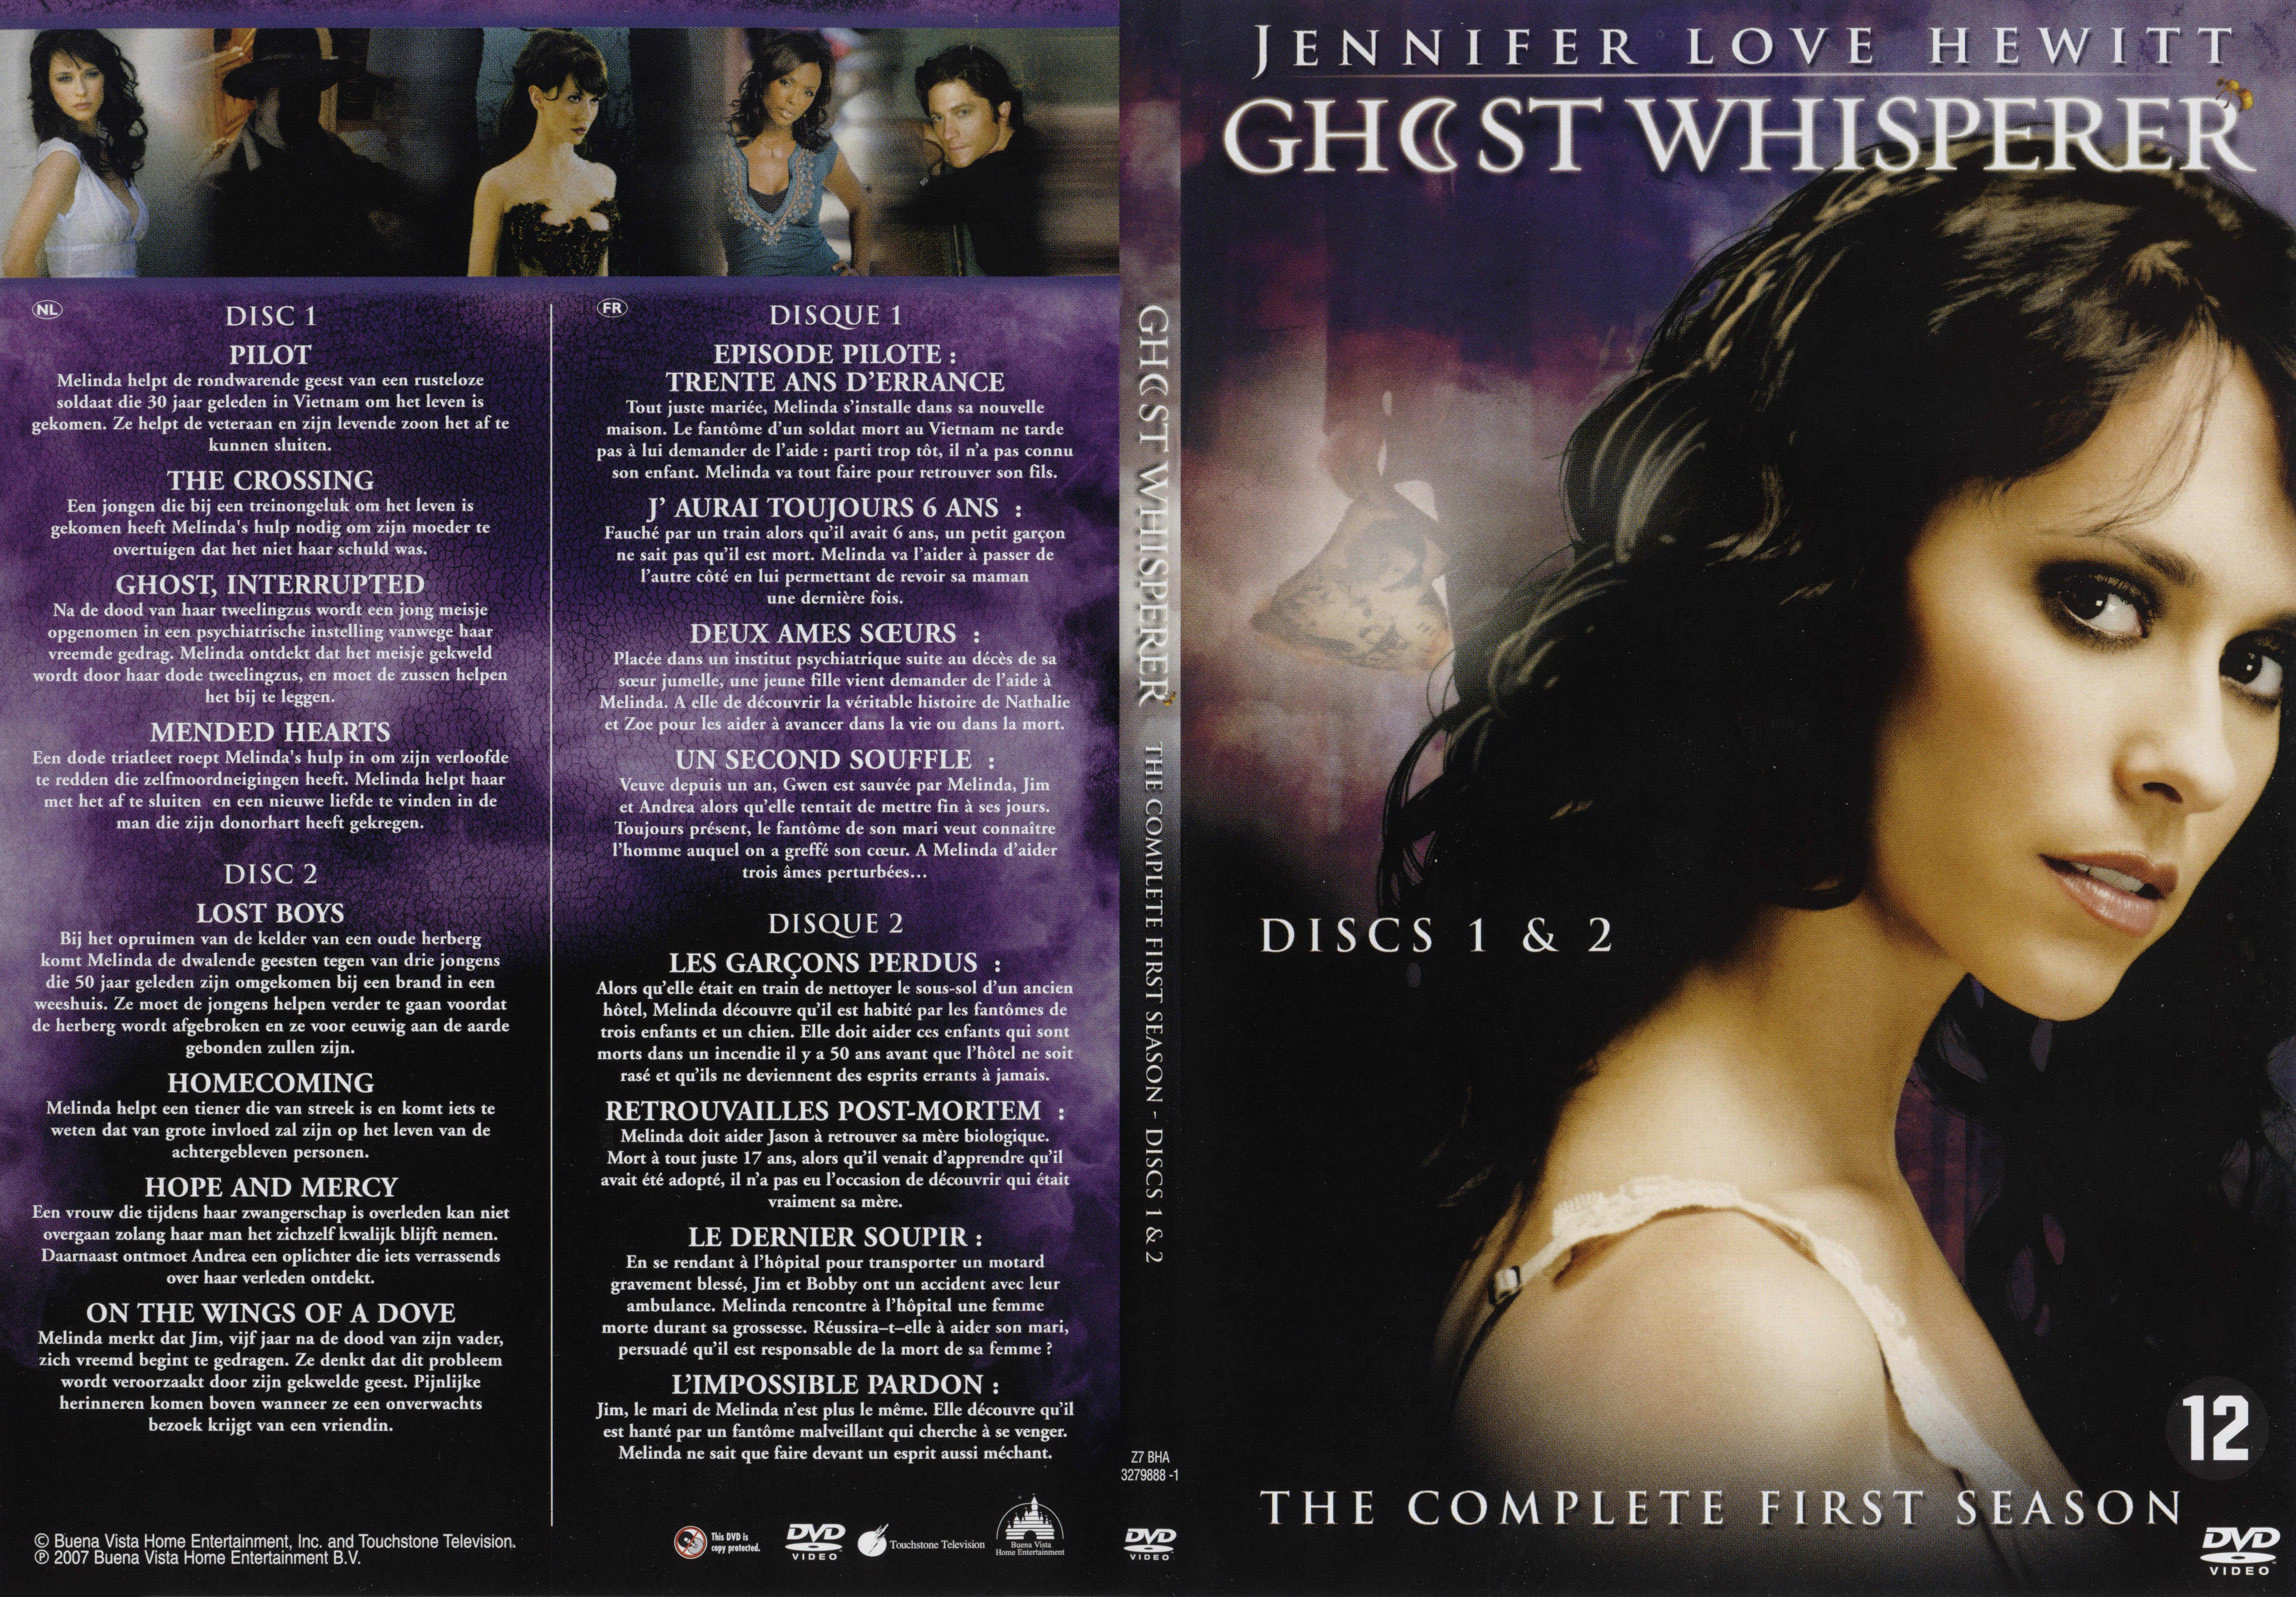 Jaquette DVD Ghost whisperer Saison 1 DVD 1